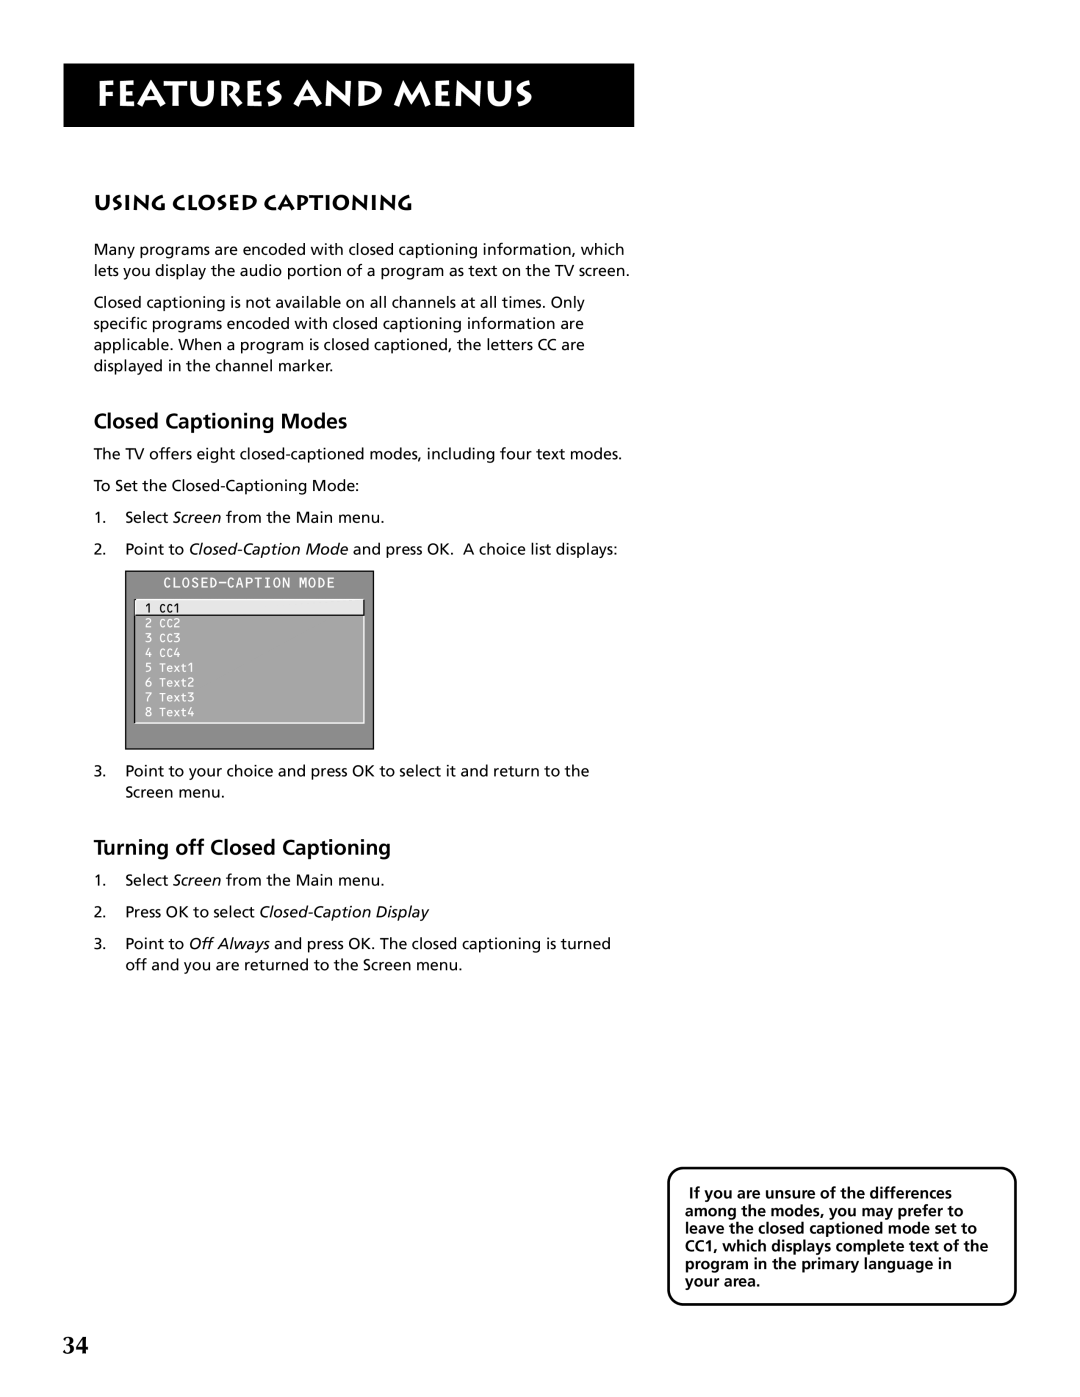 RCA F32691 manual Using Closed Captioning, Closed Captioning Modes, Turning off Closed Captioning, Features And Menus 